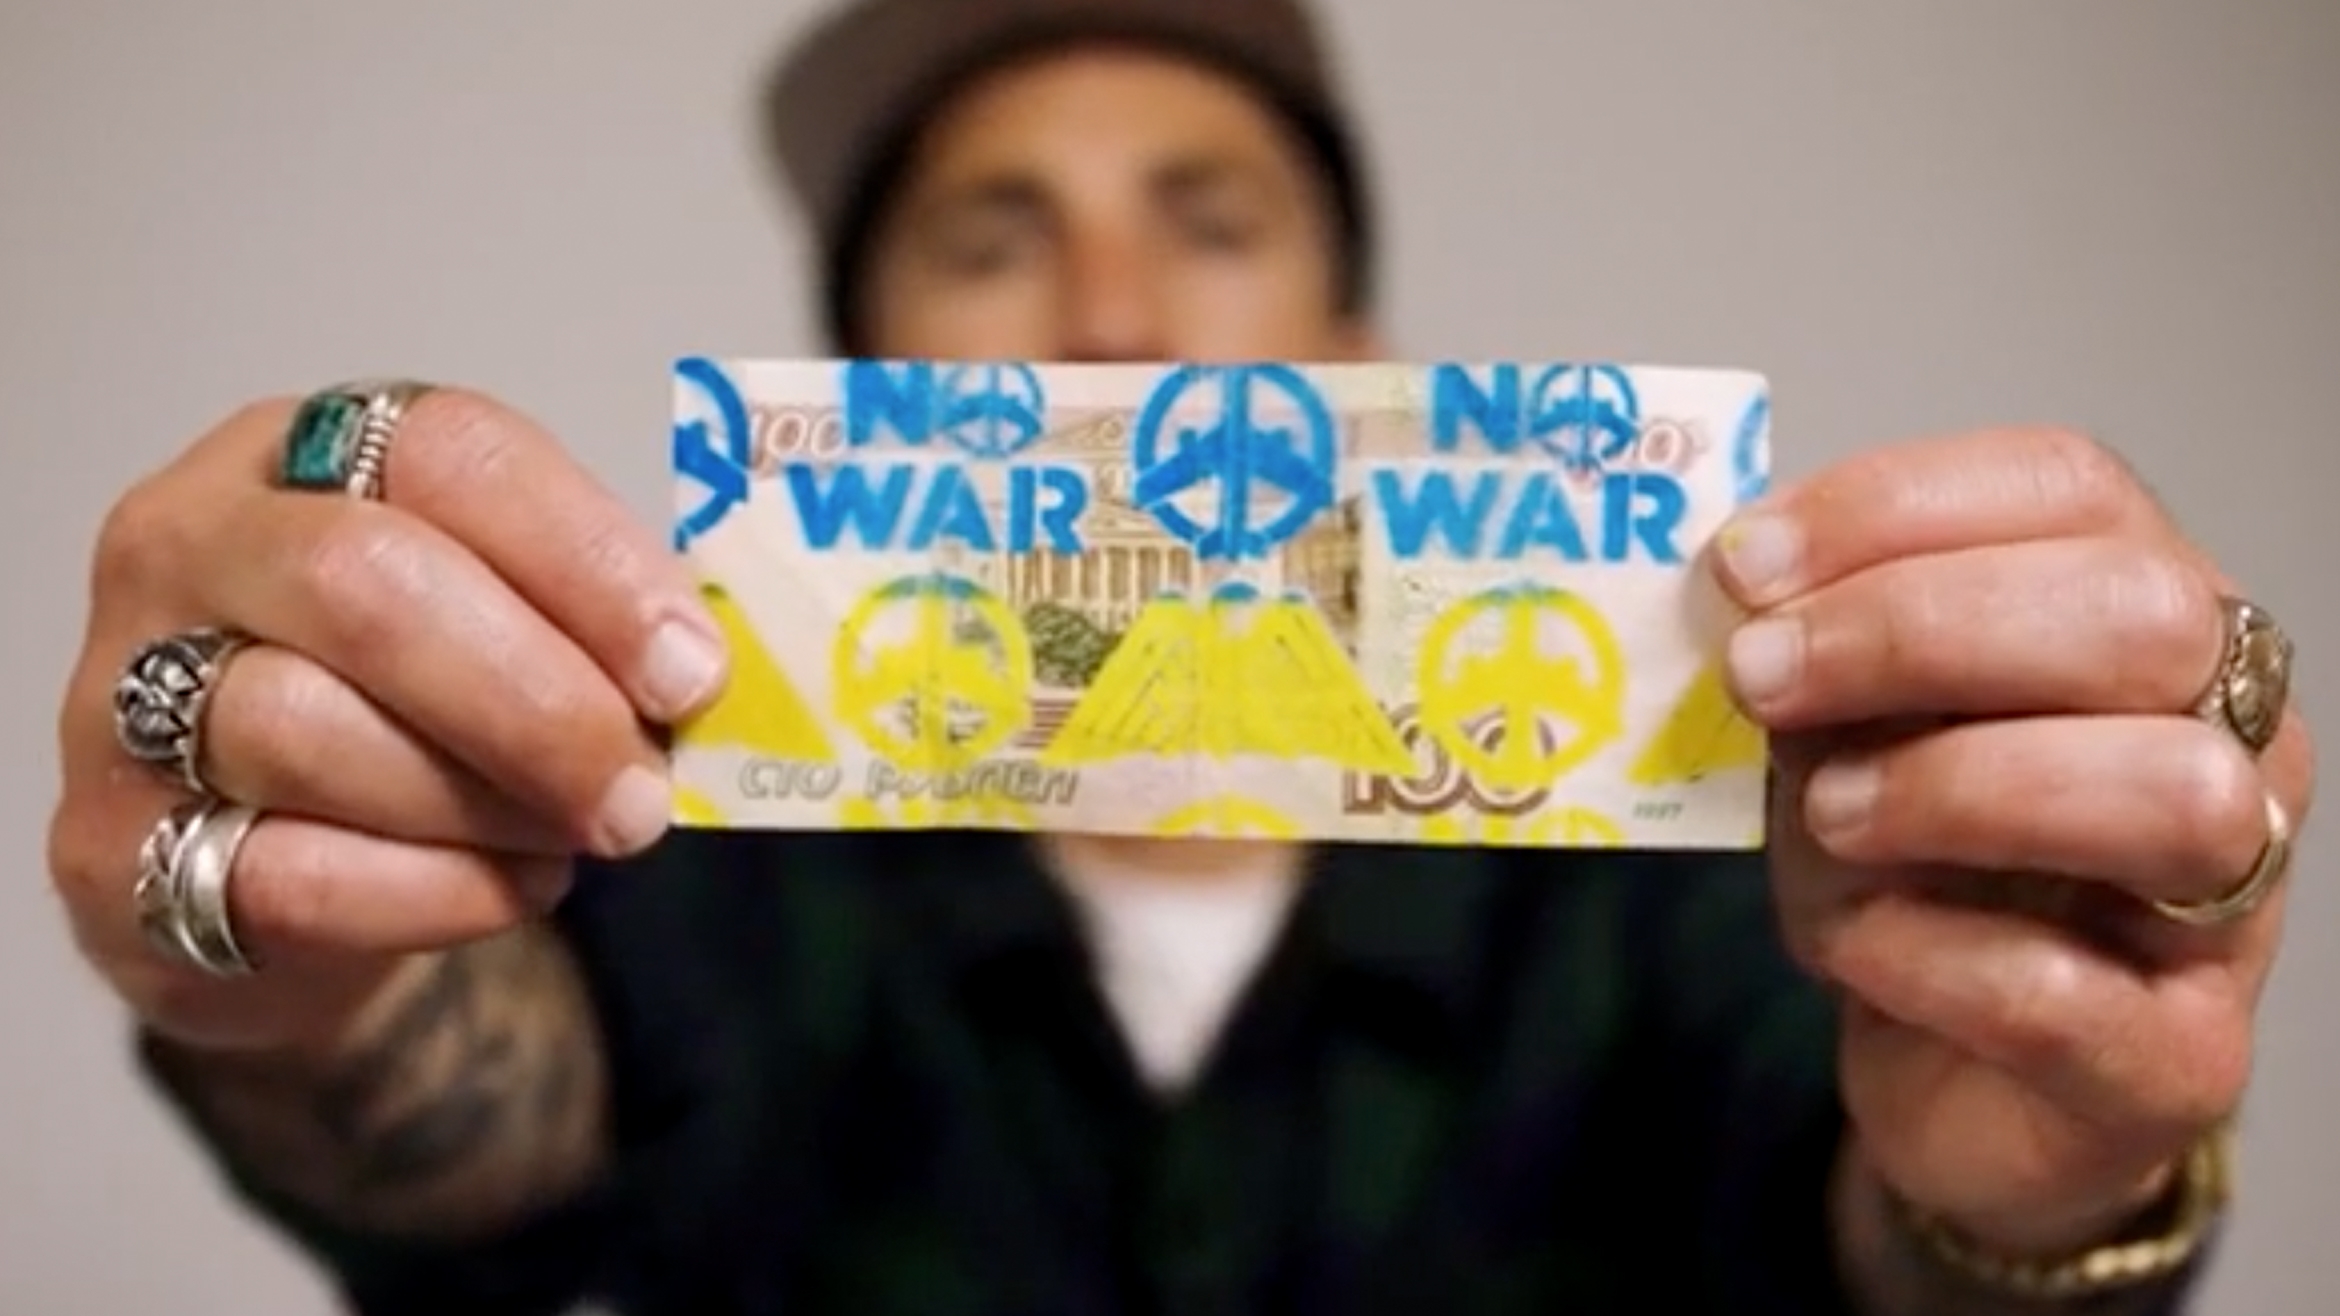 Der international bekannte Streetwear-Designer Benny Gold hat gleich mehrere Rubel-Noten mit Anti-Kriegsbotschaften versehen –